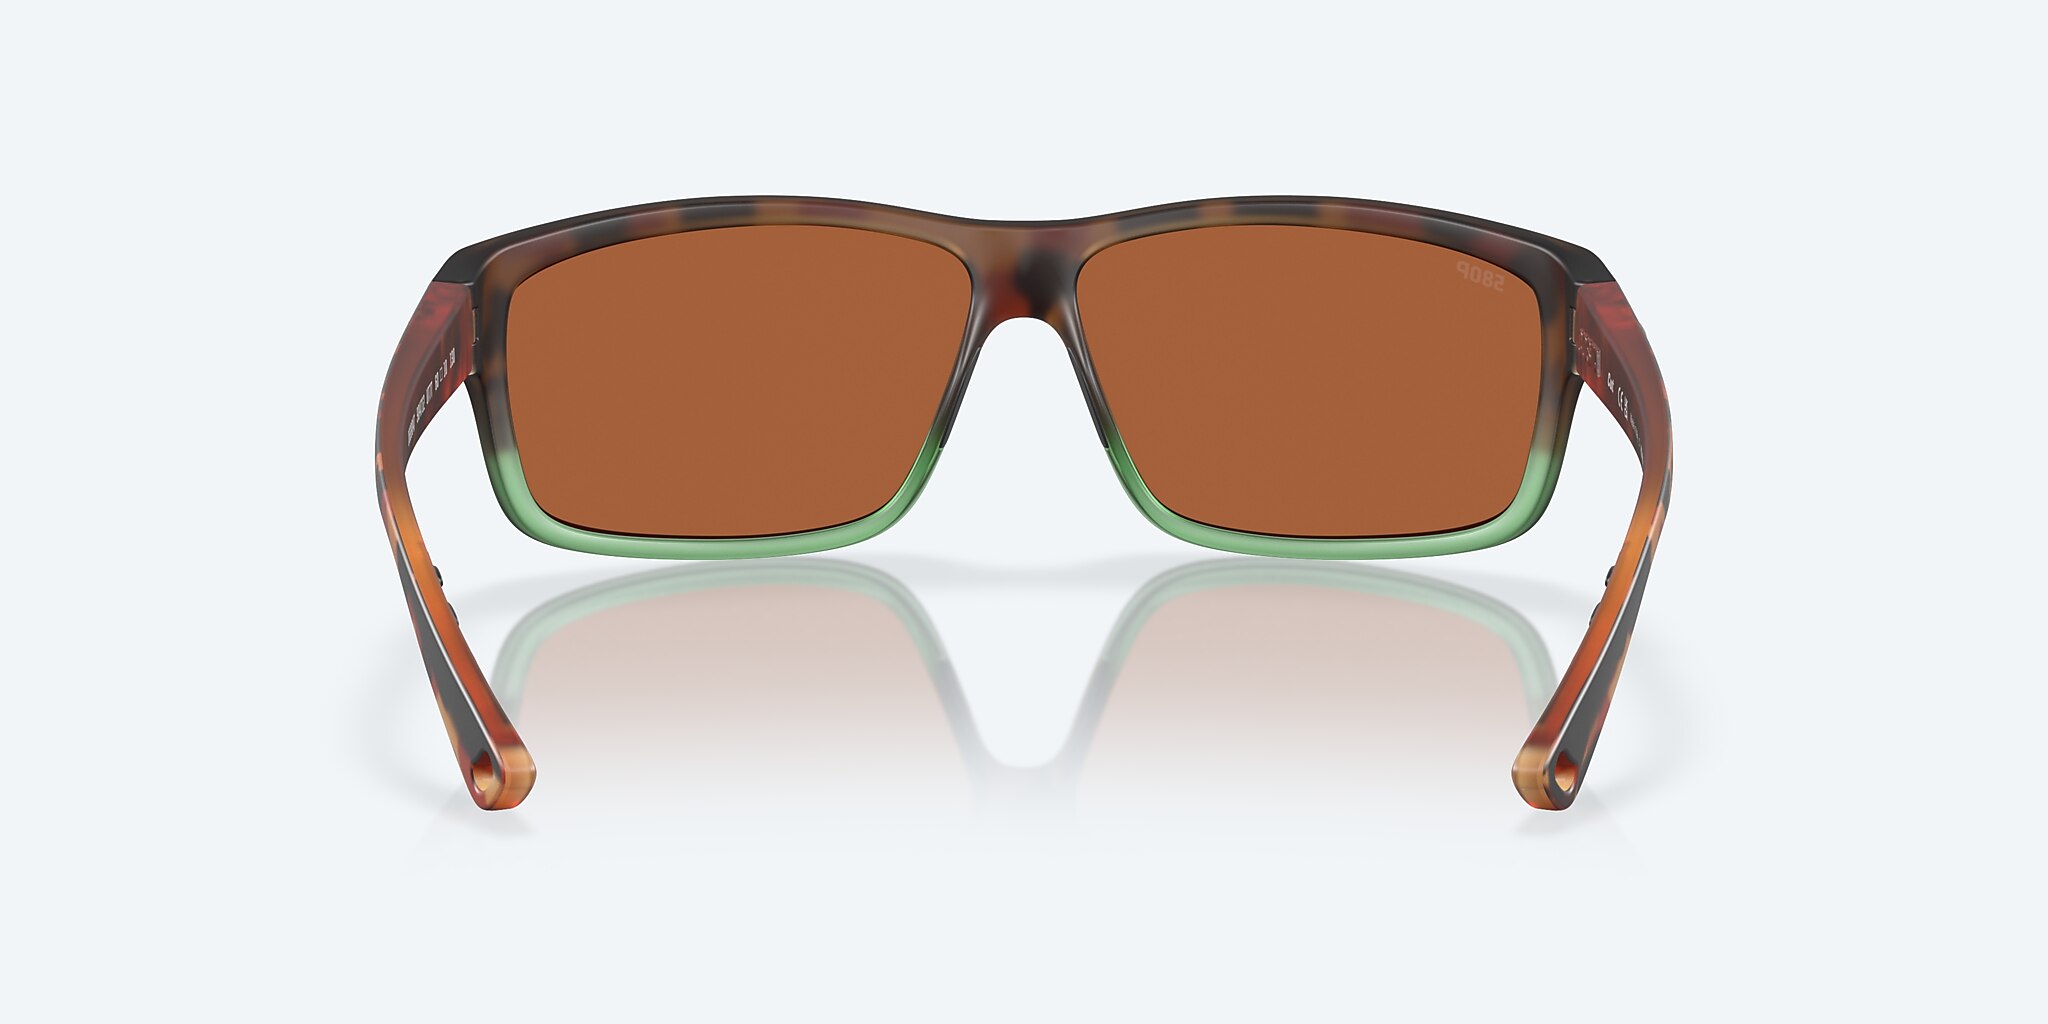 Costa Del Mar Cut 60.4 mm Matte Tortuga Fade Sunglasses